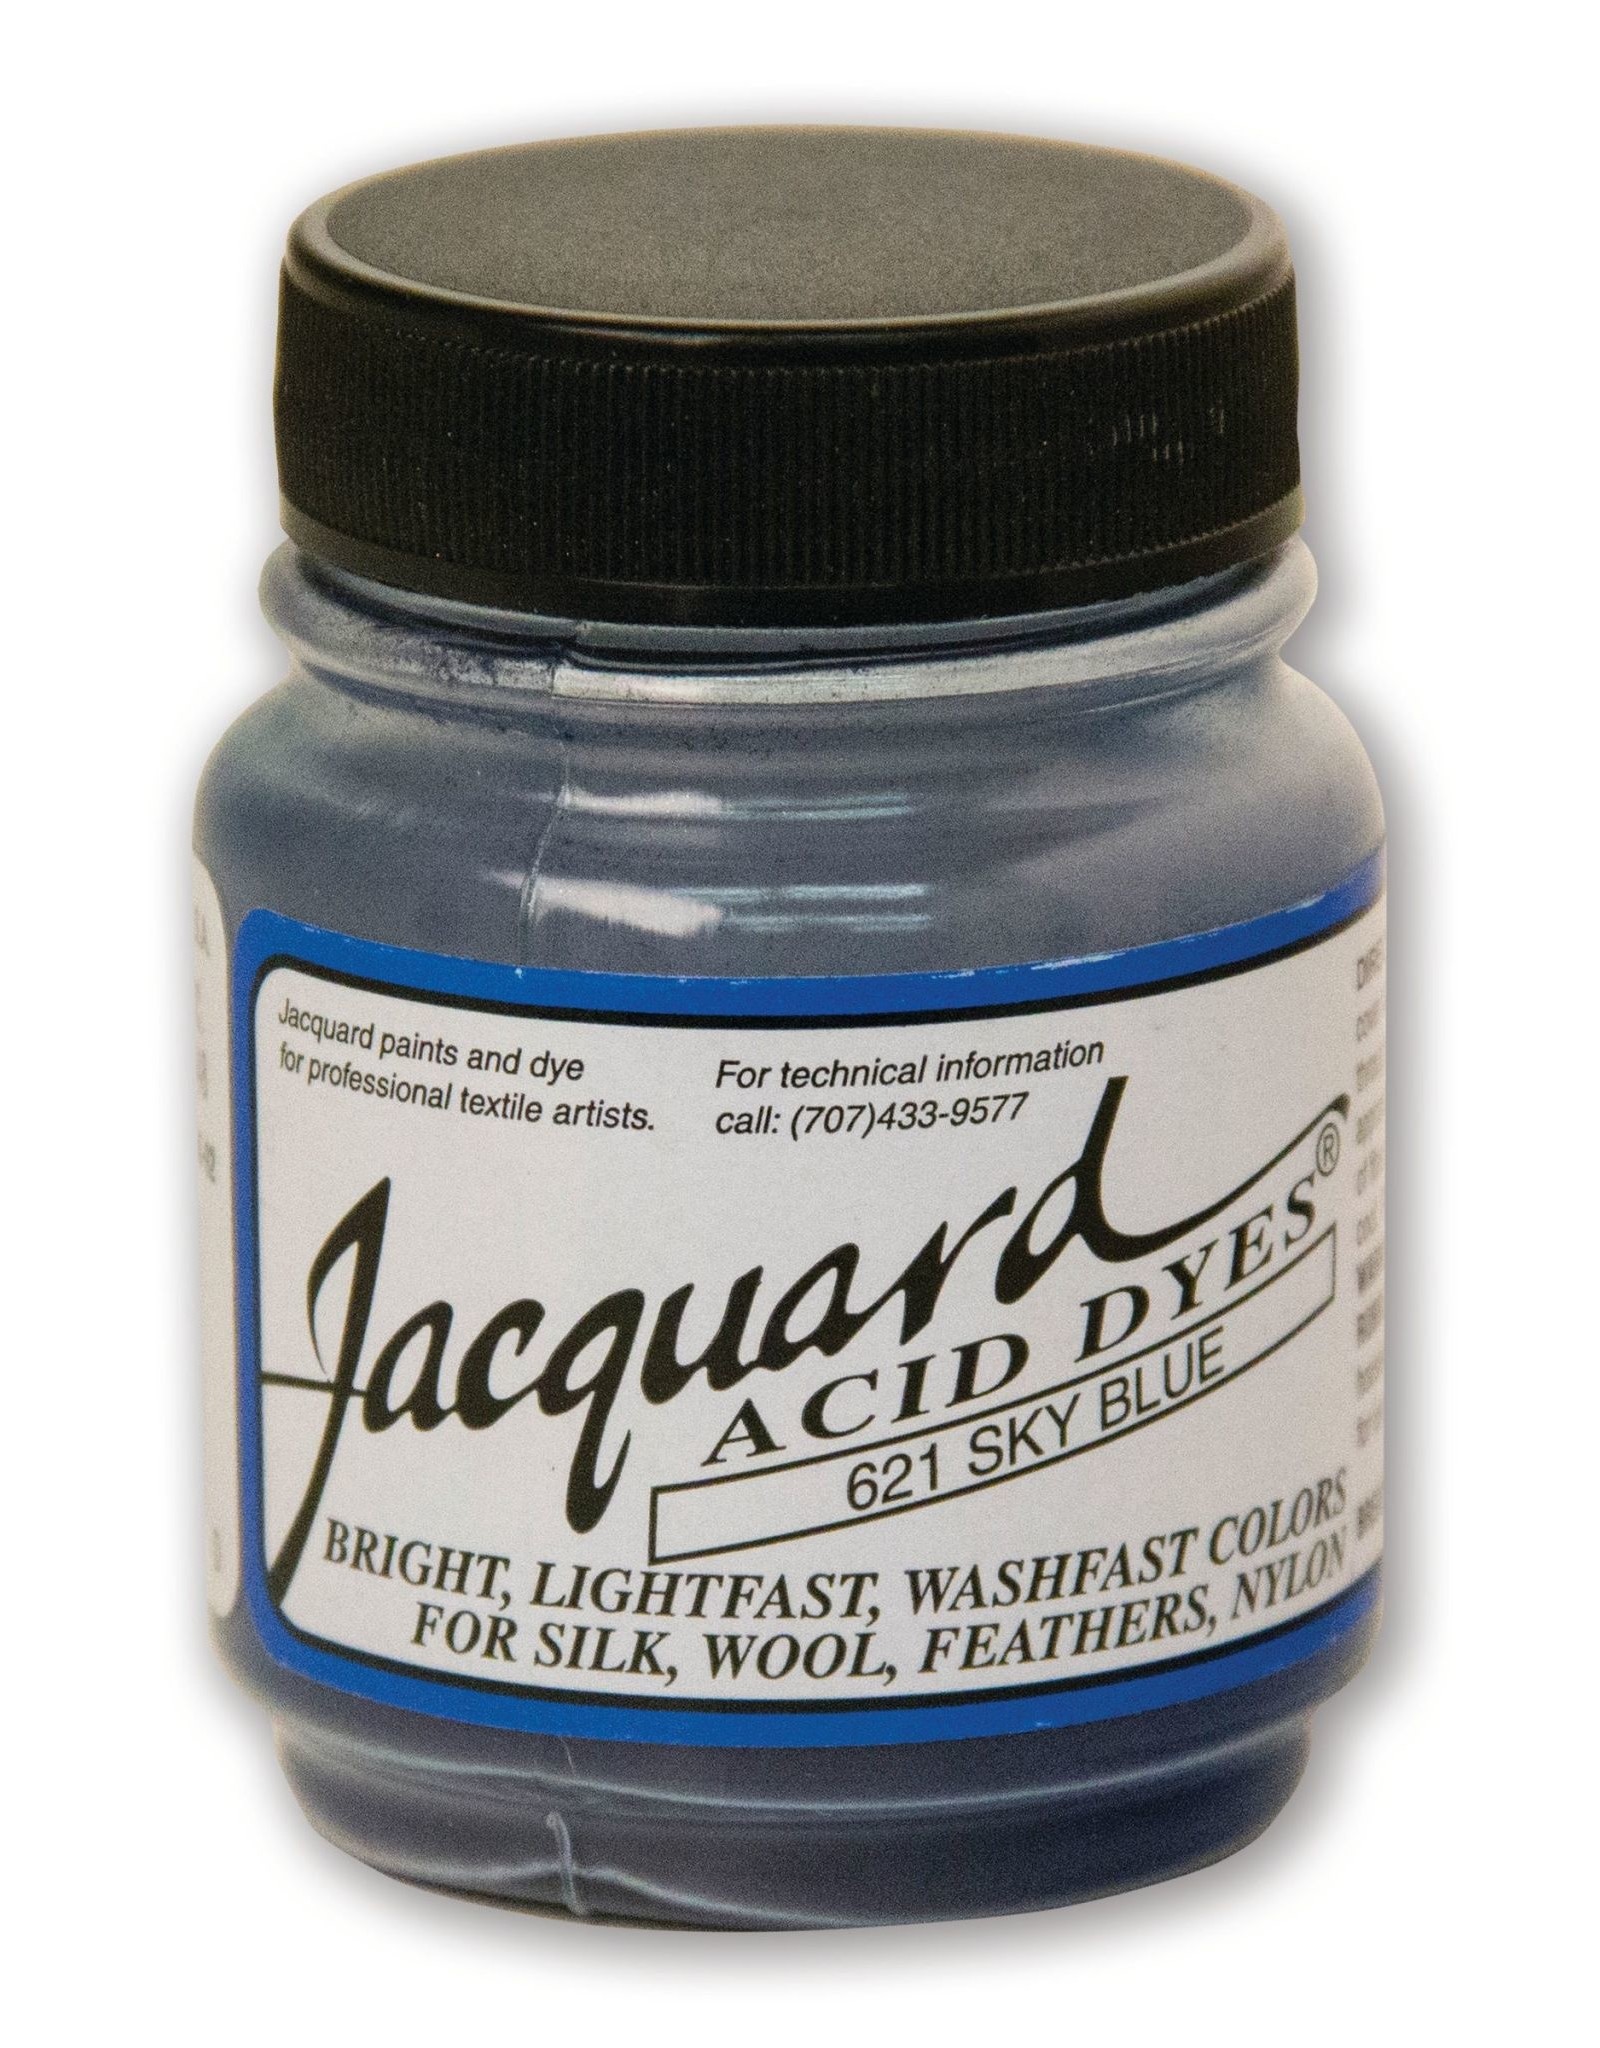 Jacquard Jacquard Acid Dye #621 Sky Blue 1/2oz